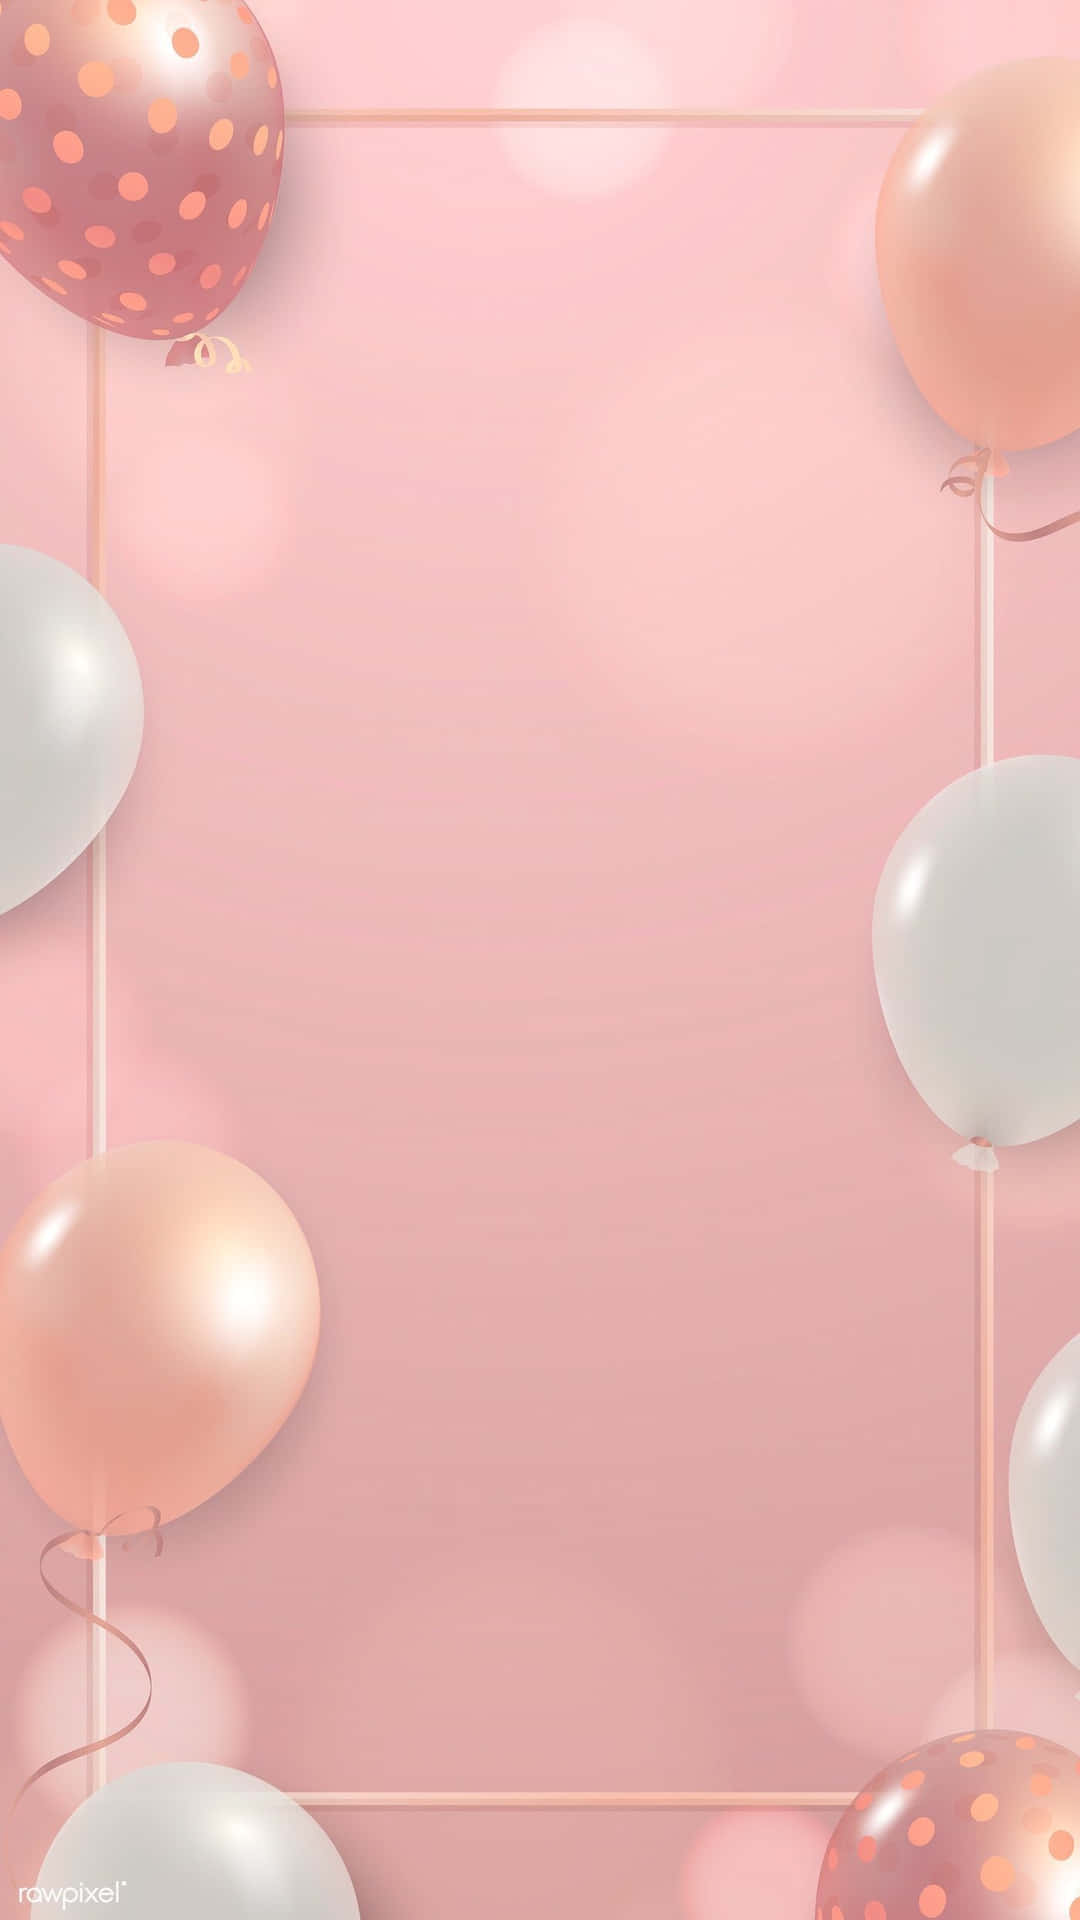 Palloncinidi Compleanno Con Bordo Immagine Estetica Rosa